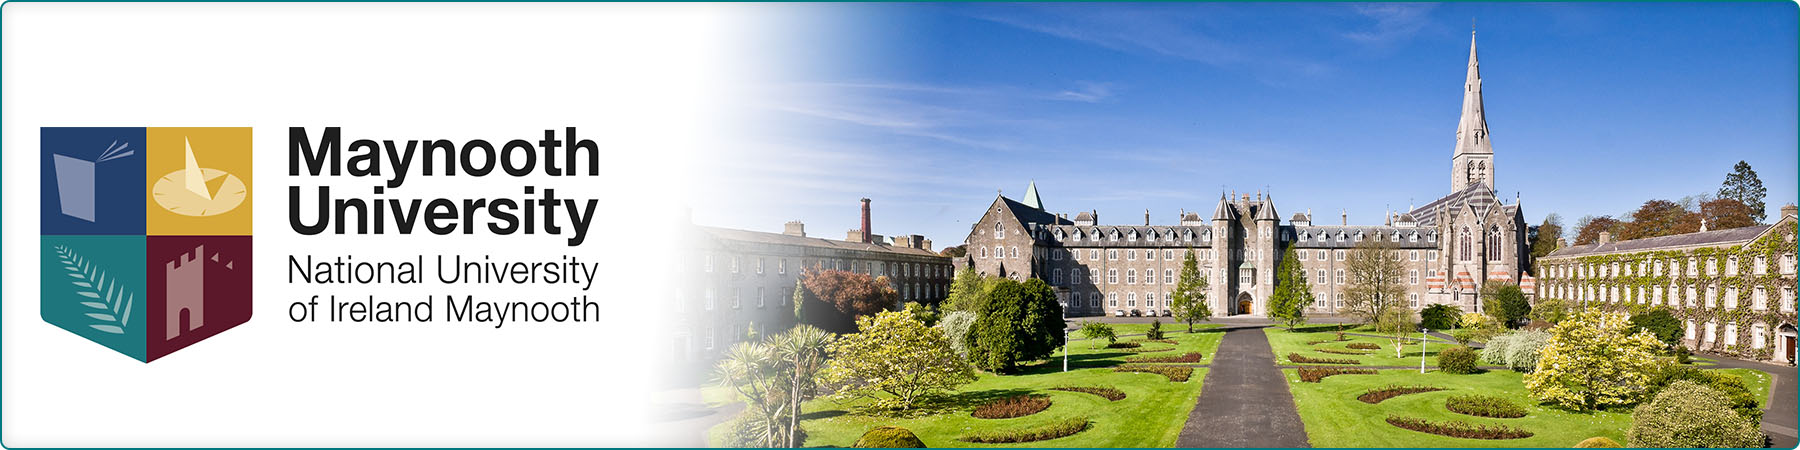 Maynooth University, National University of Ireland Maynooth